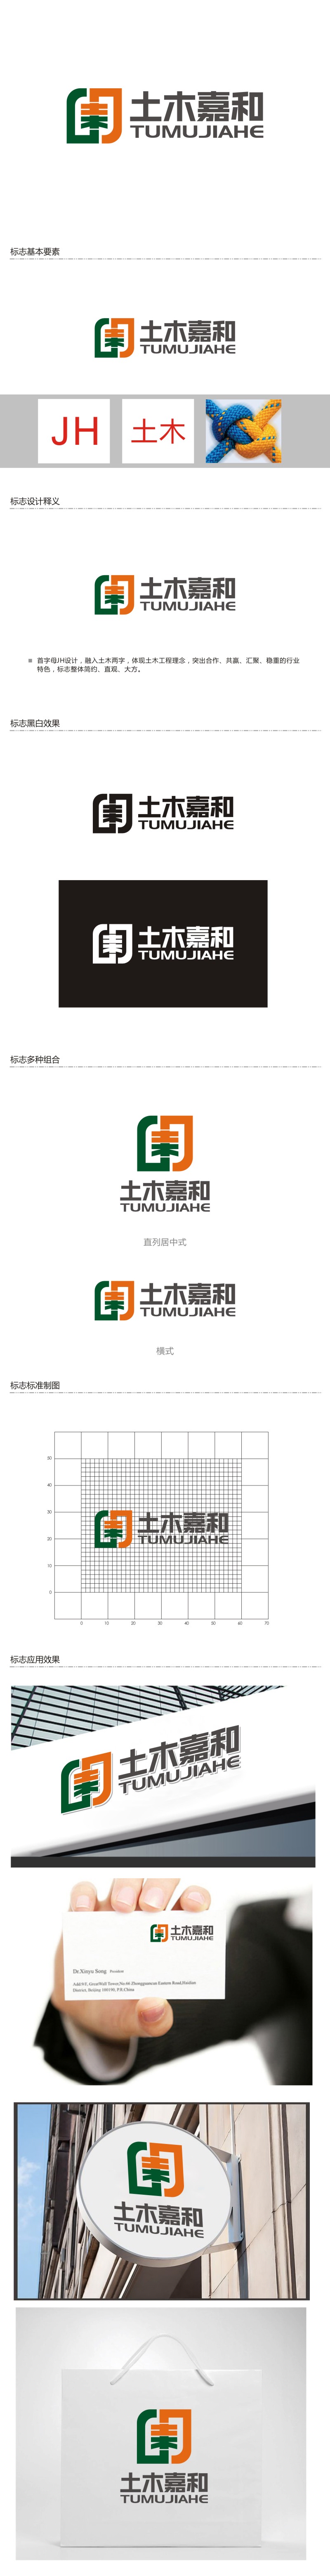 曾翼的北京土木嘉和工程咨询有限公司logo设计